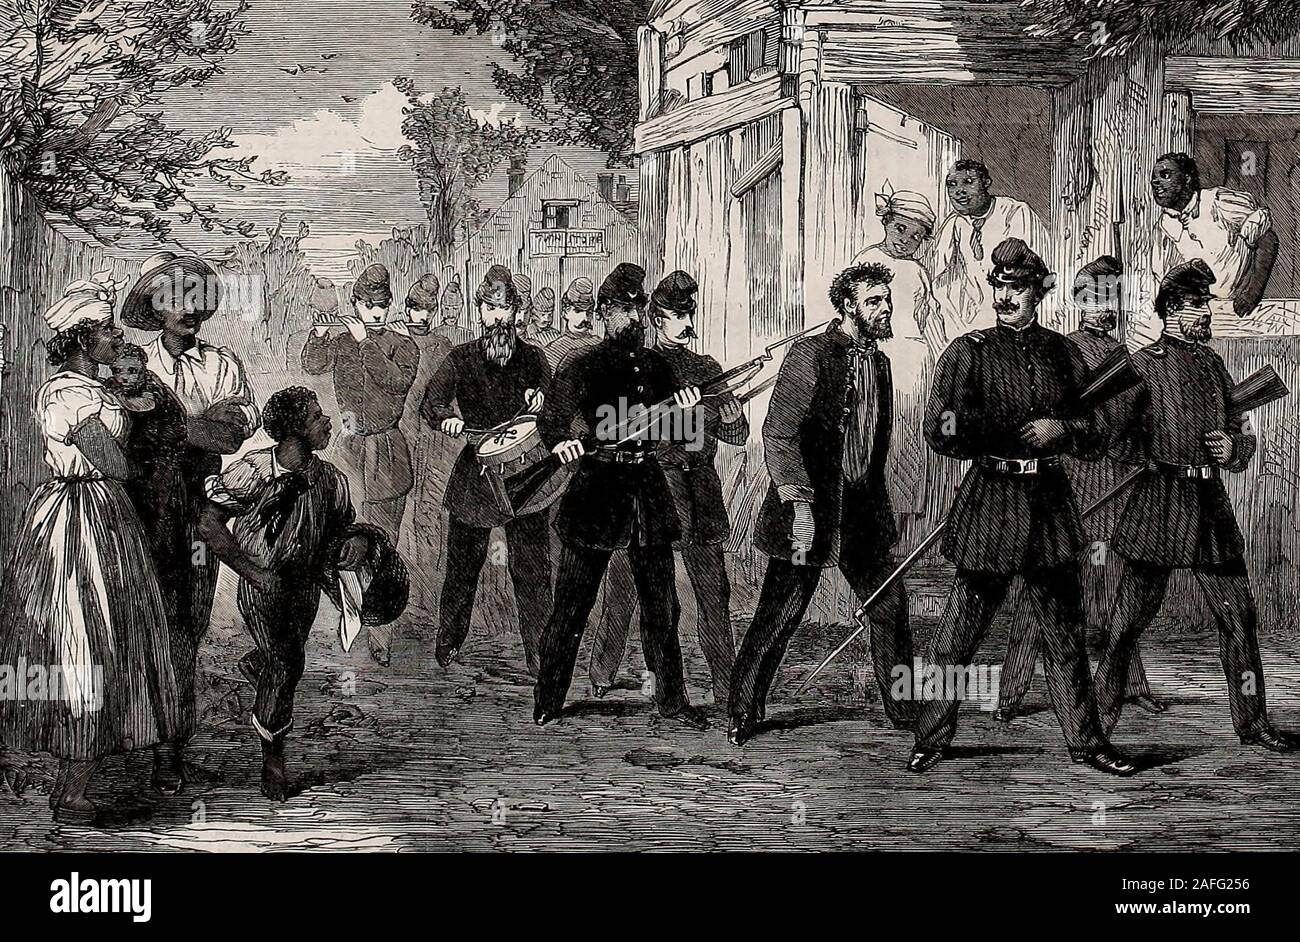 La guerra civil en Estados Unidos - ronroneo fuera un soldado del Ejército Federal por las calles de Washington, DC - 1861 Foto de stock